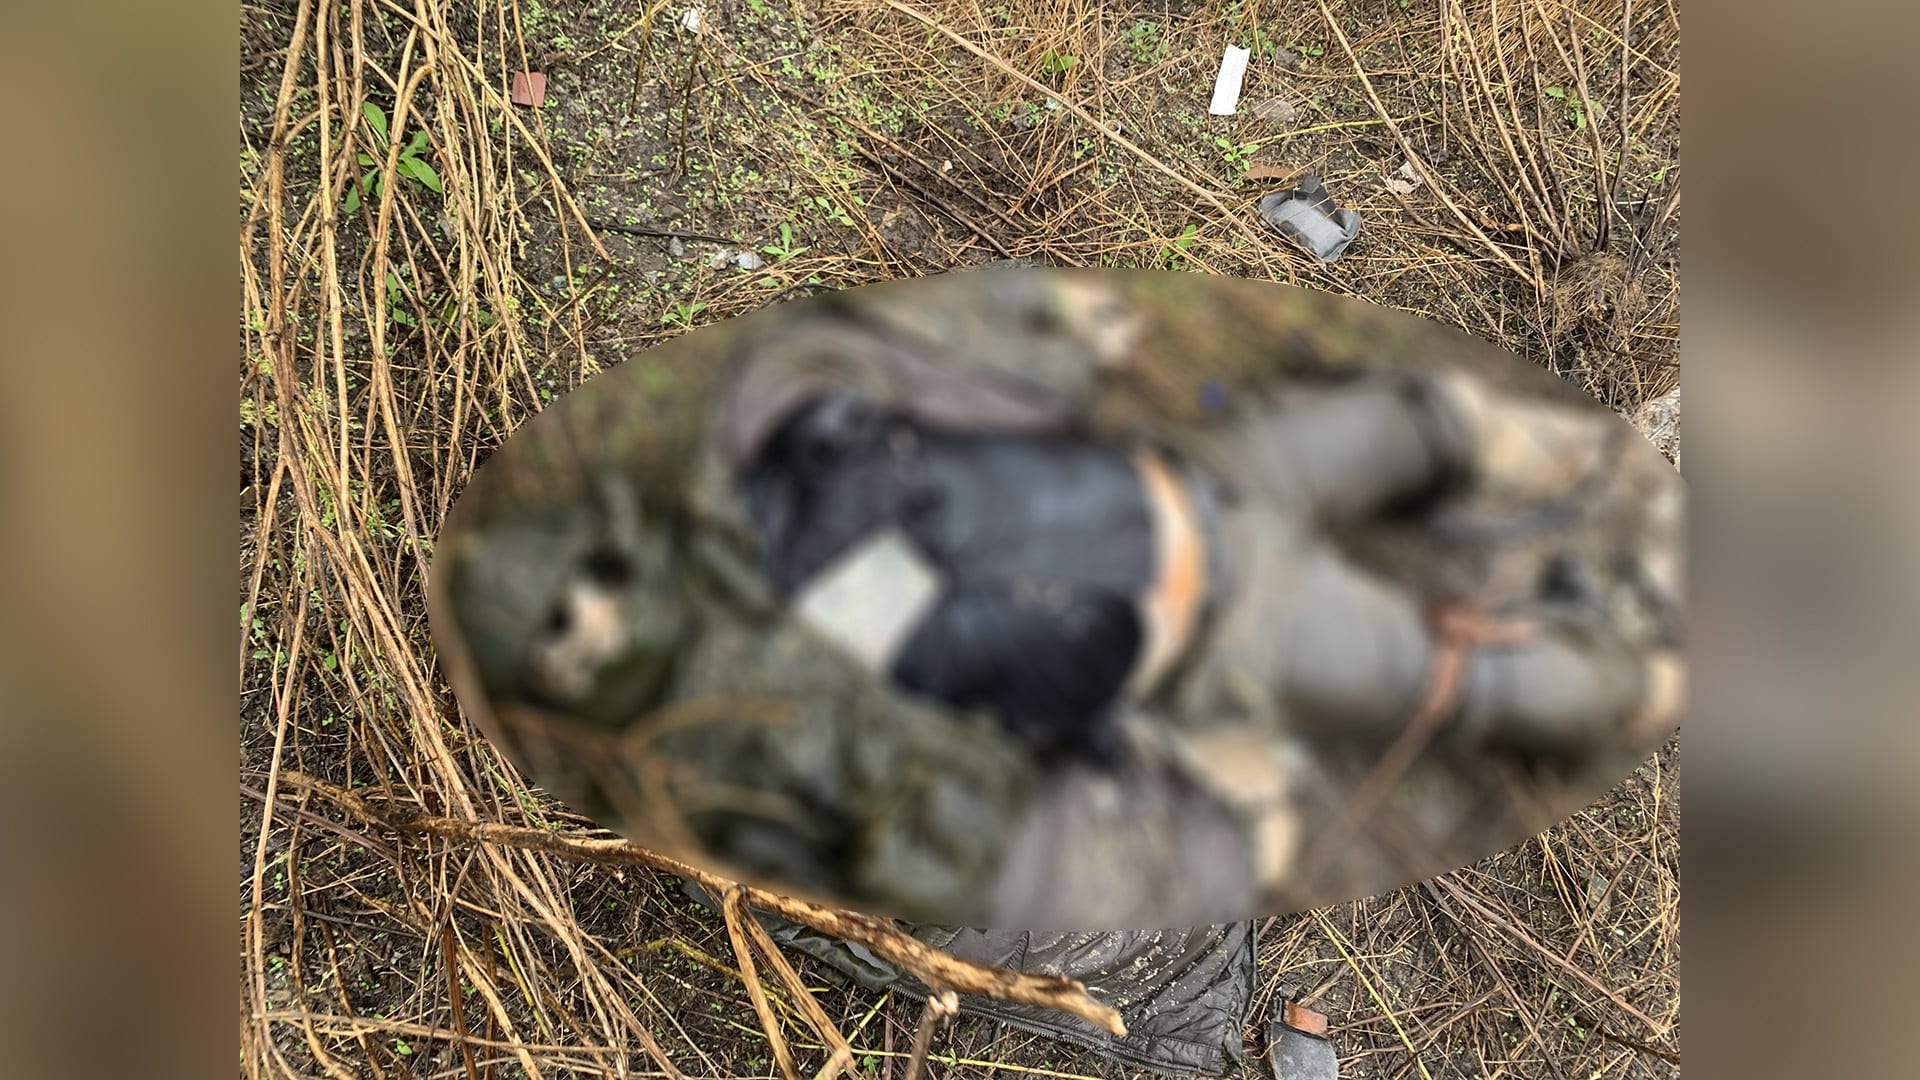 Tělo, které zůstalo v příkopu u cesty, po níž na Ukrajině postupovala ruská kolona. Obrázek ze záměrně rozostřen